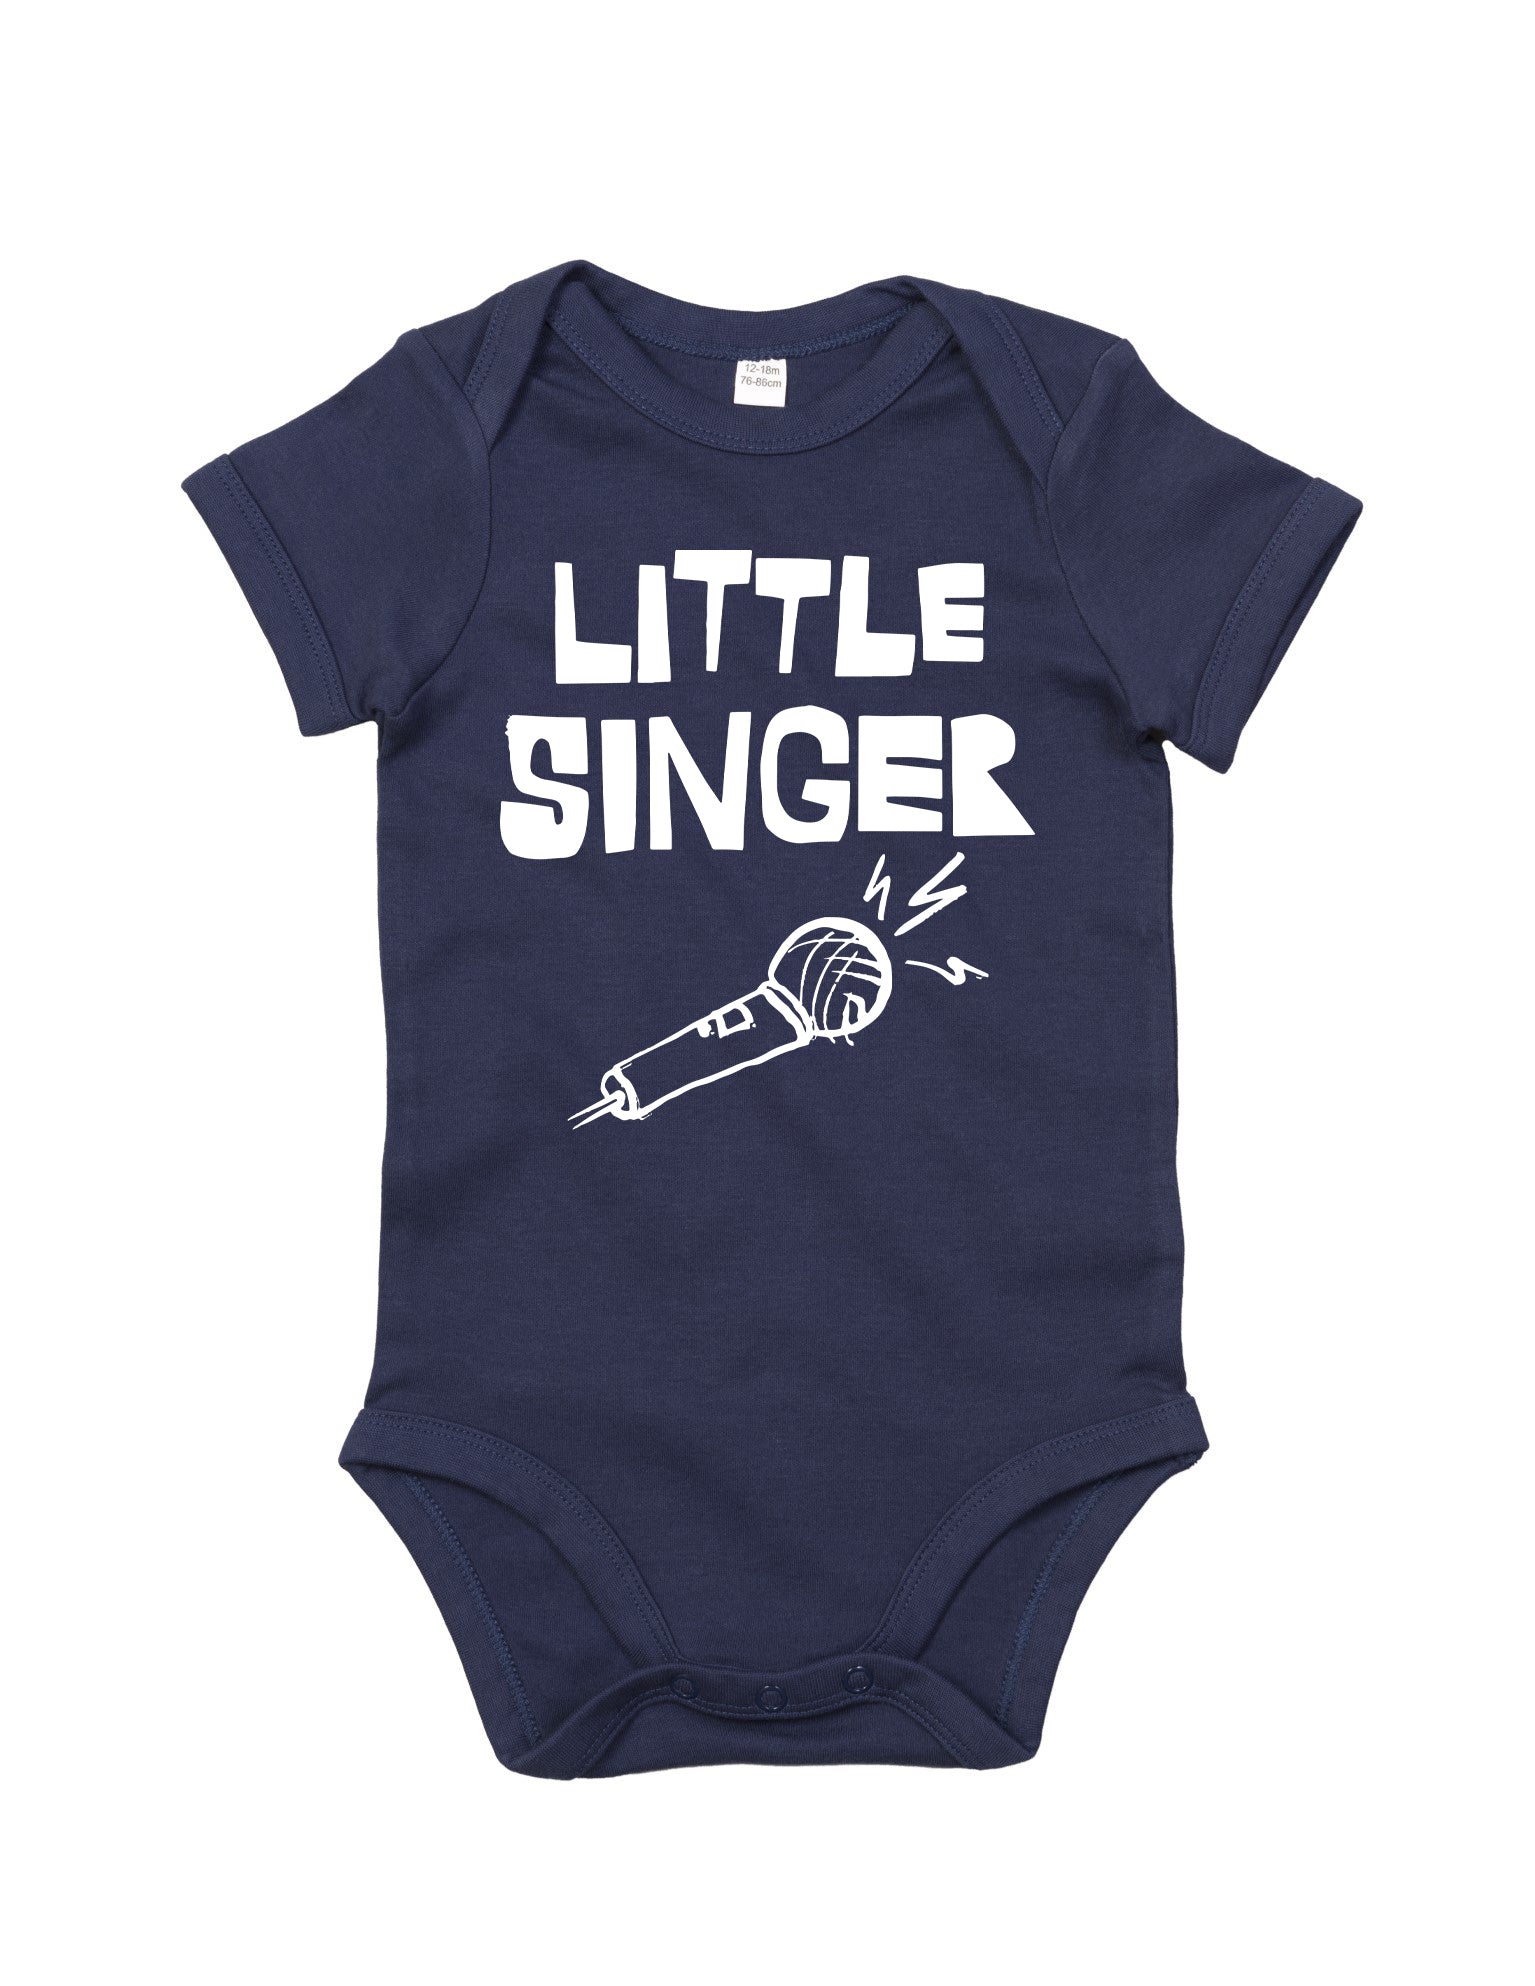 'Little Singer' Organic Babygro